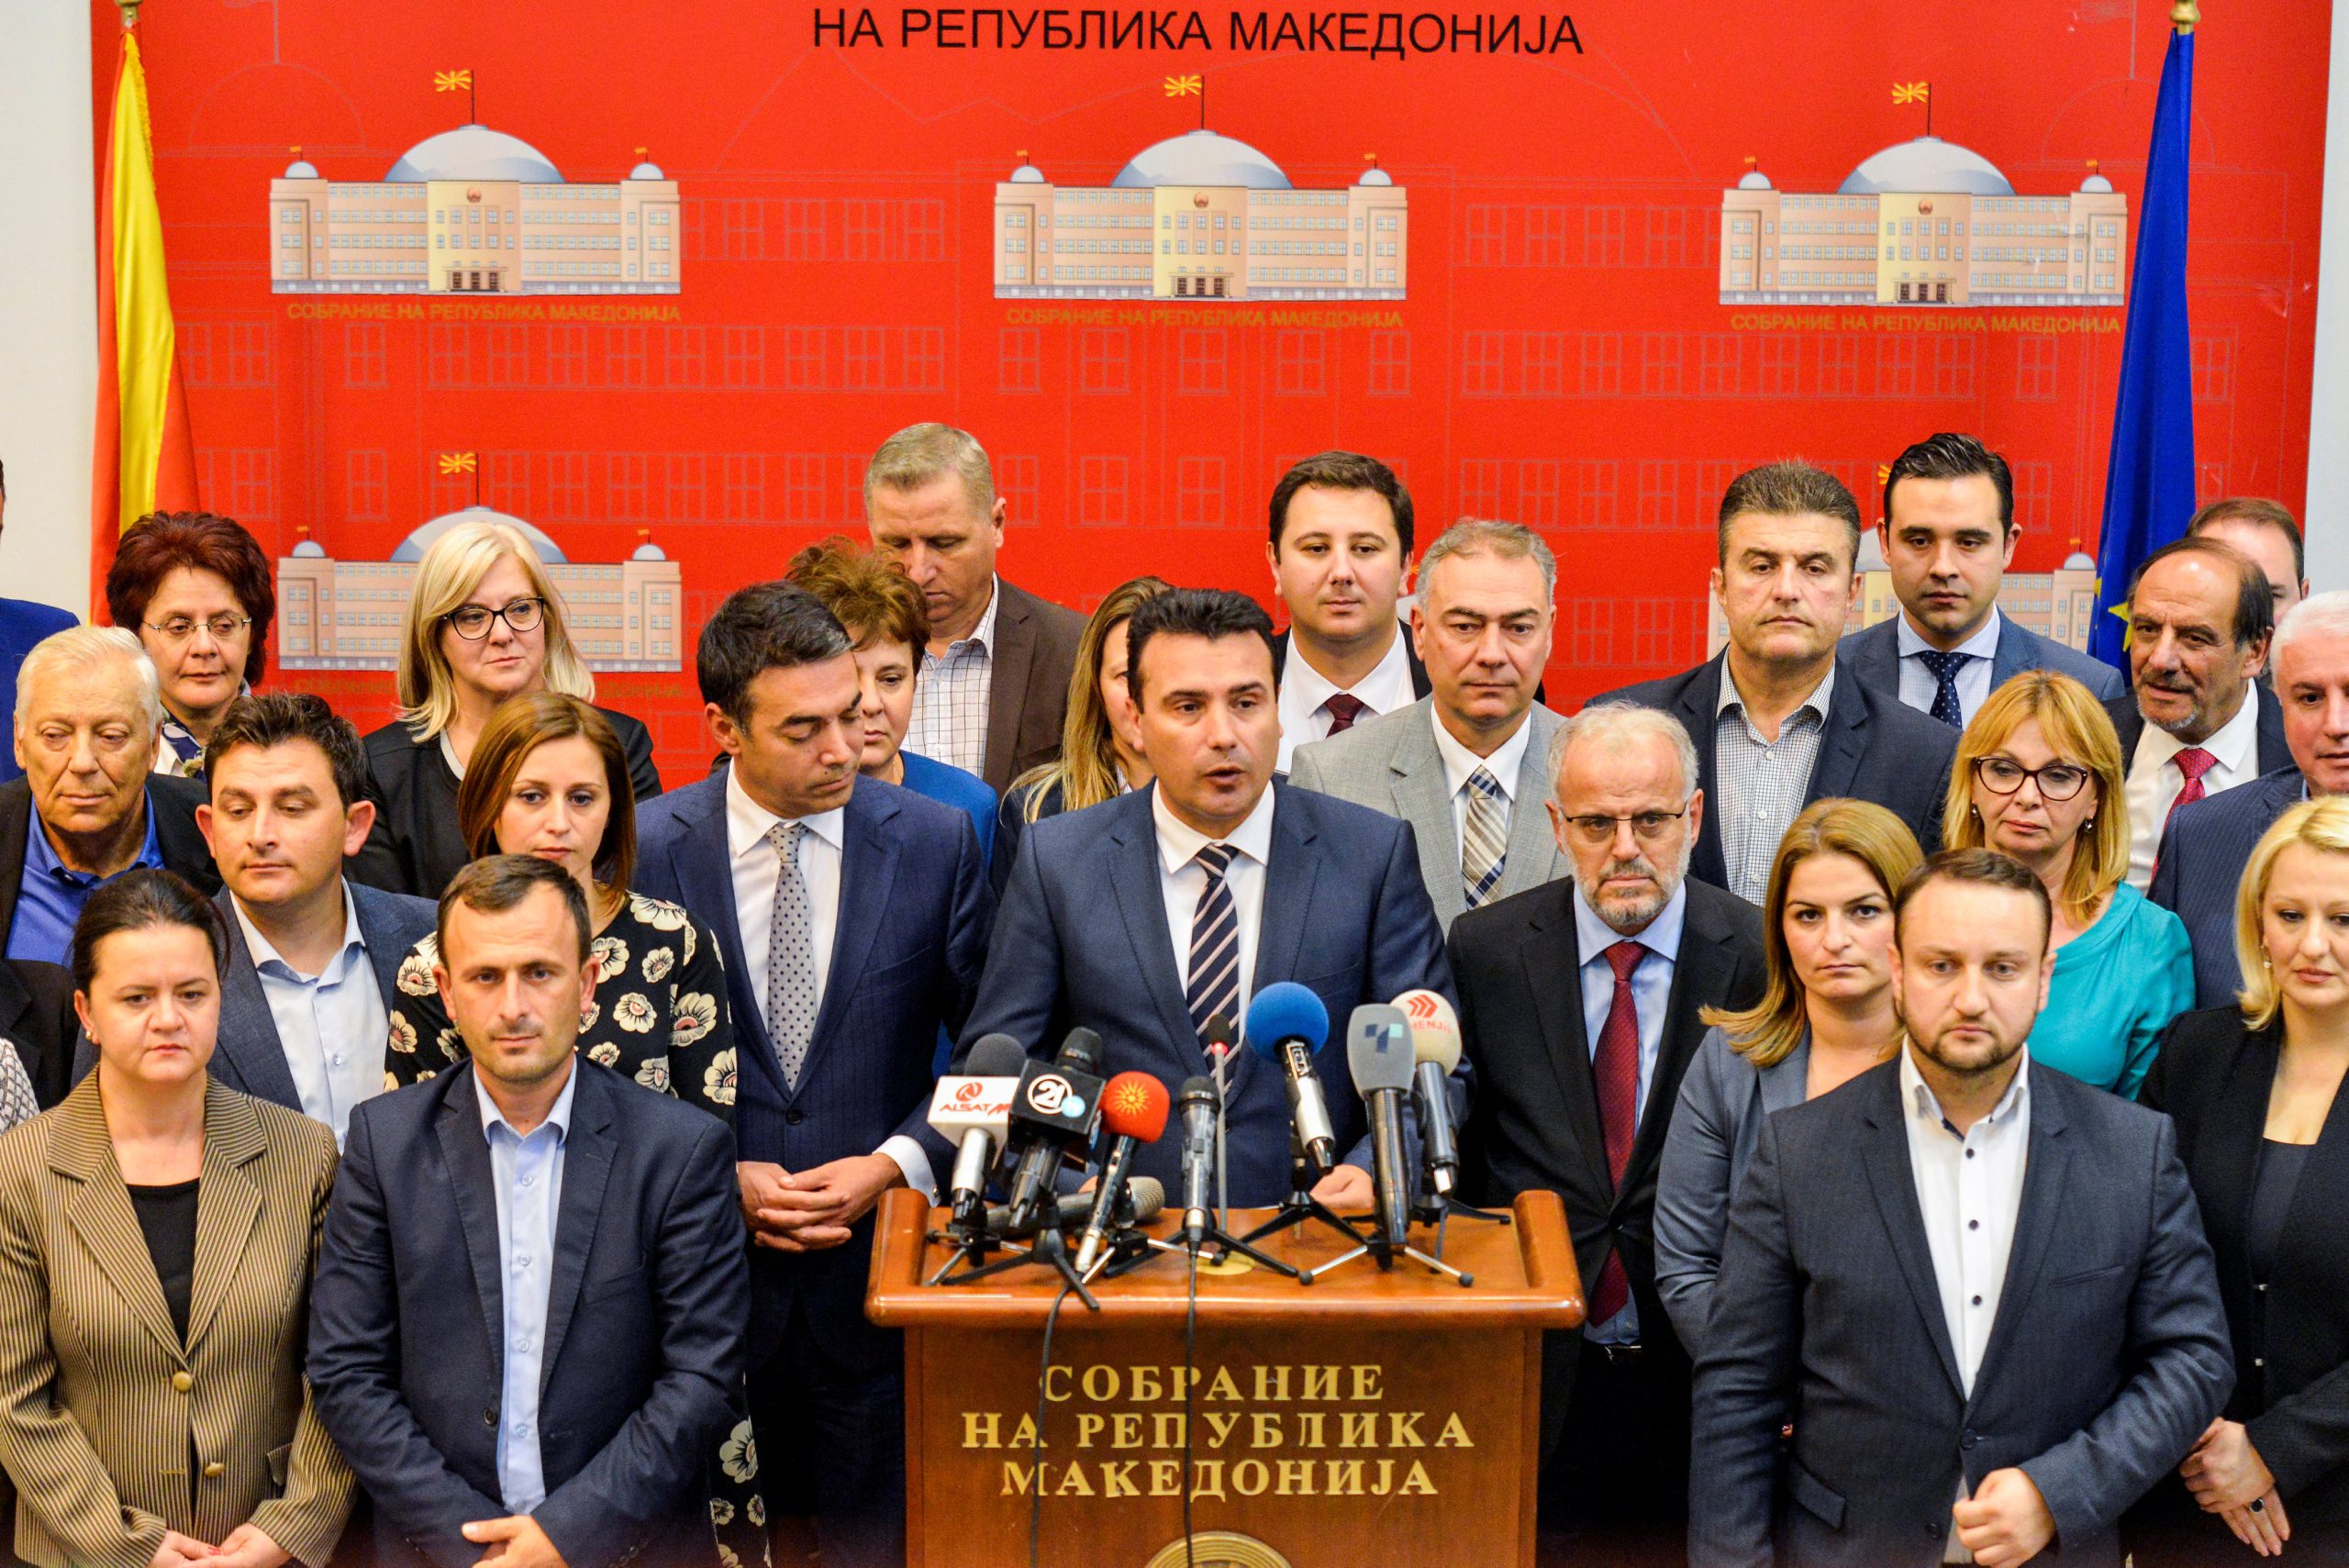 Tο μυστήριο πρόσωπο – «κλειδί» που «έπεισε» τους 8 του VMRO να αποστατήσουν (φώτο)